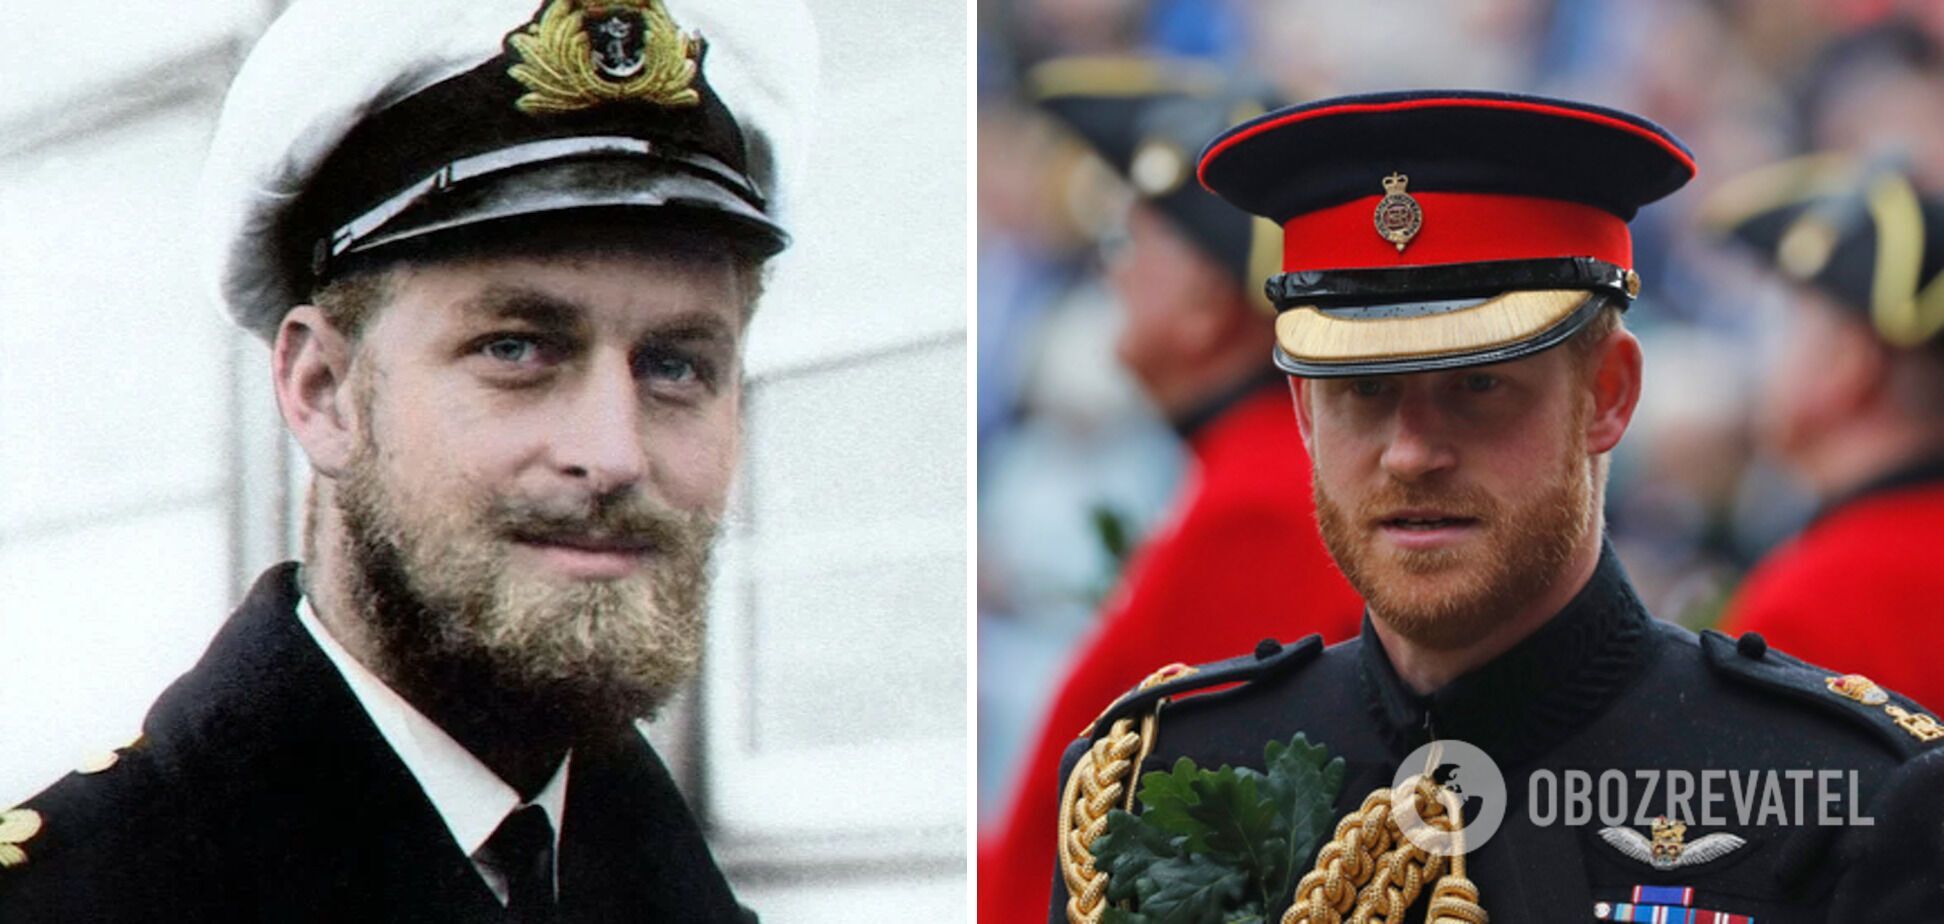 Принц Гарри похож на своего деда принца Филиппа.